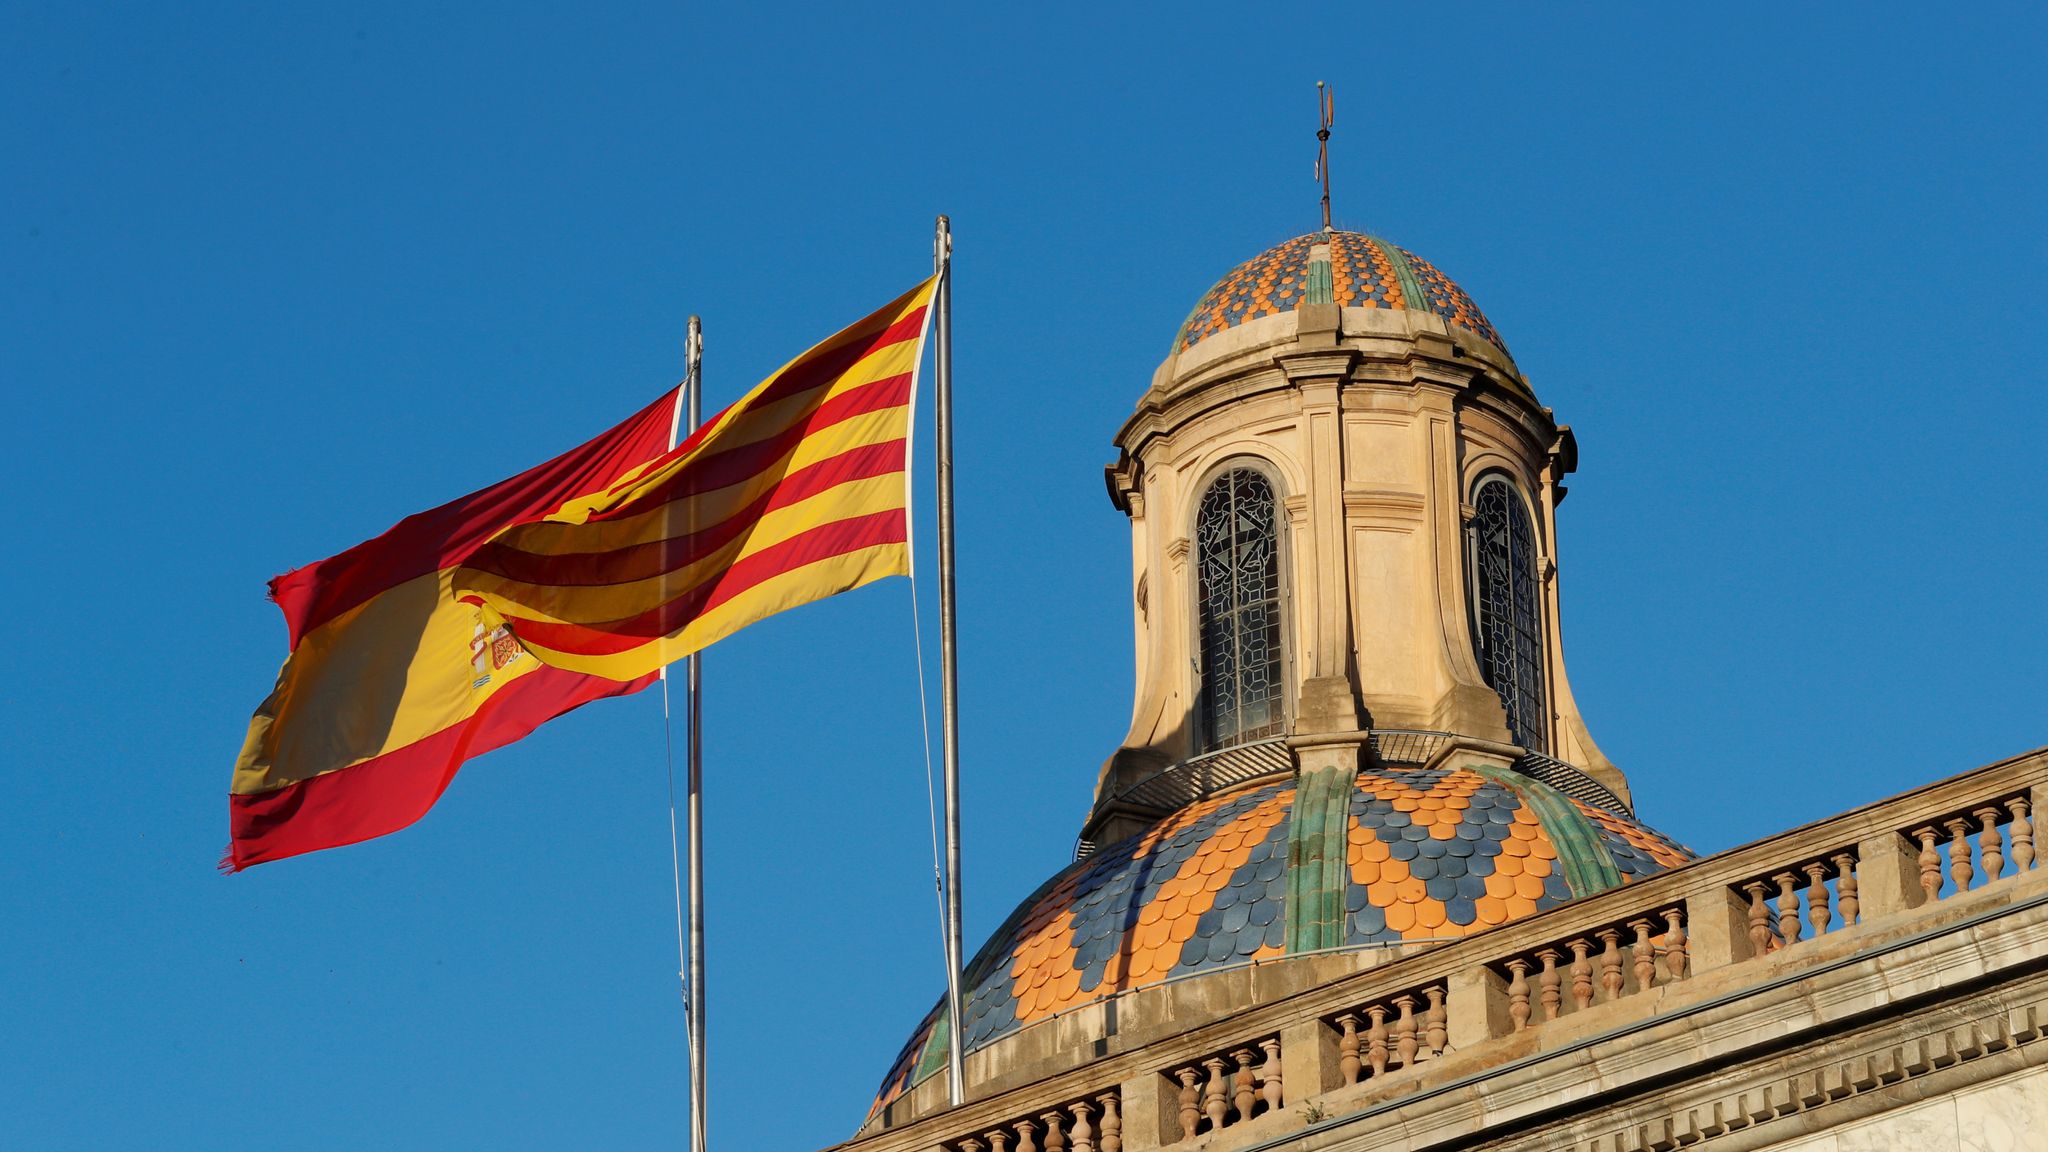 اليمين المتطرف في إسبانيا ـ تنامي خطاب الكراهية